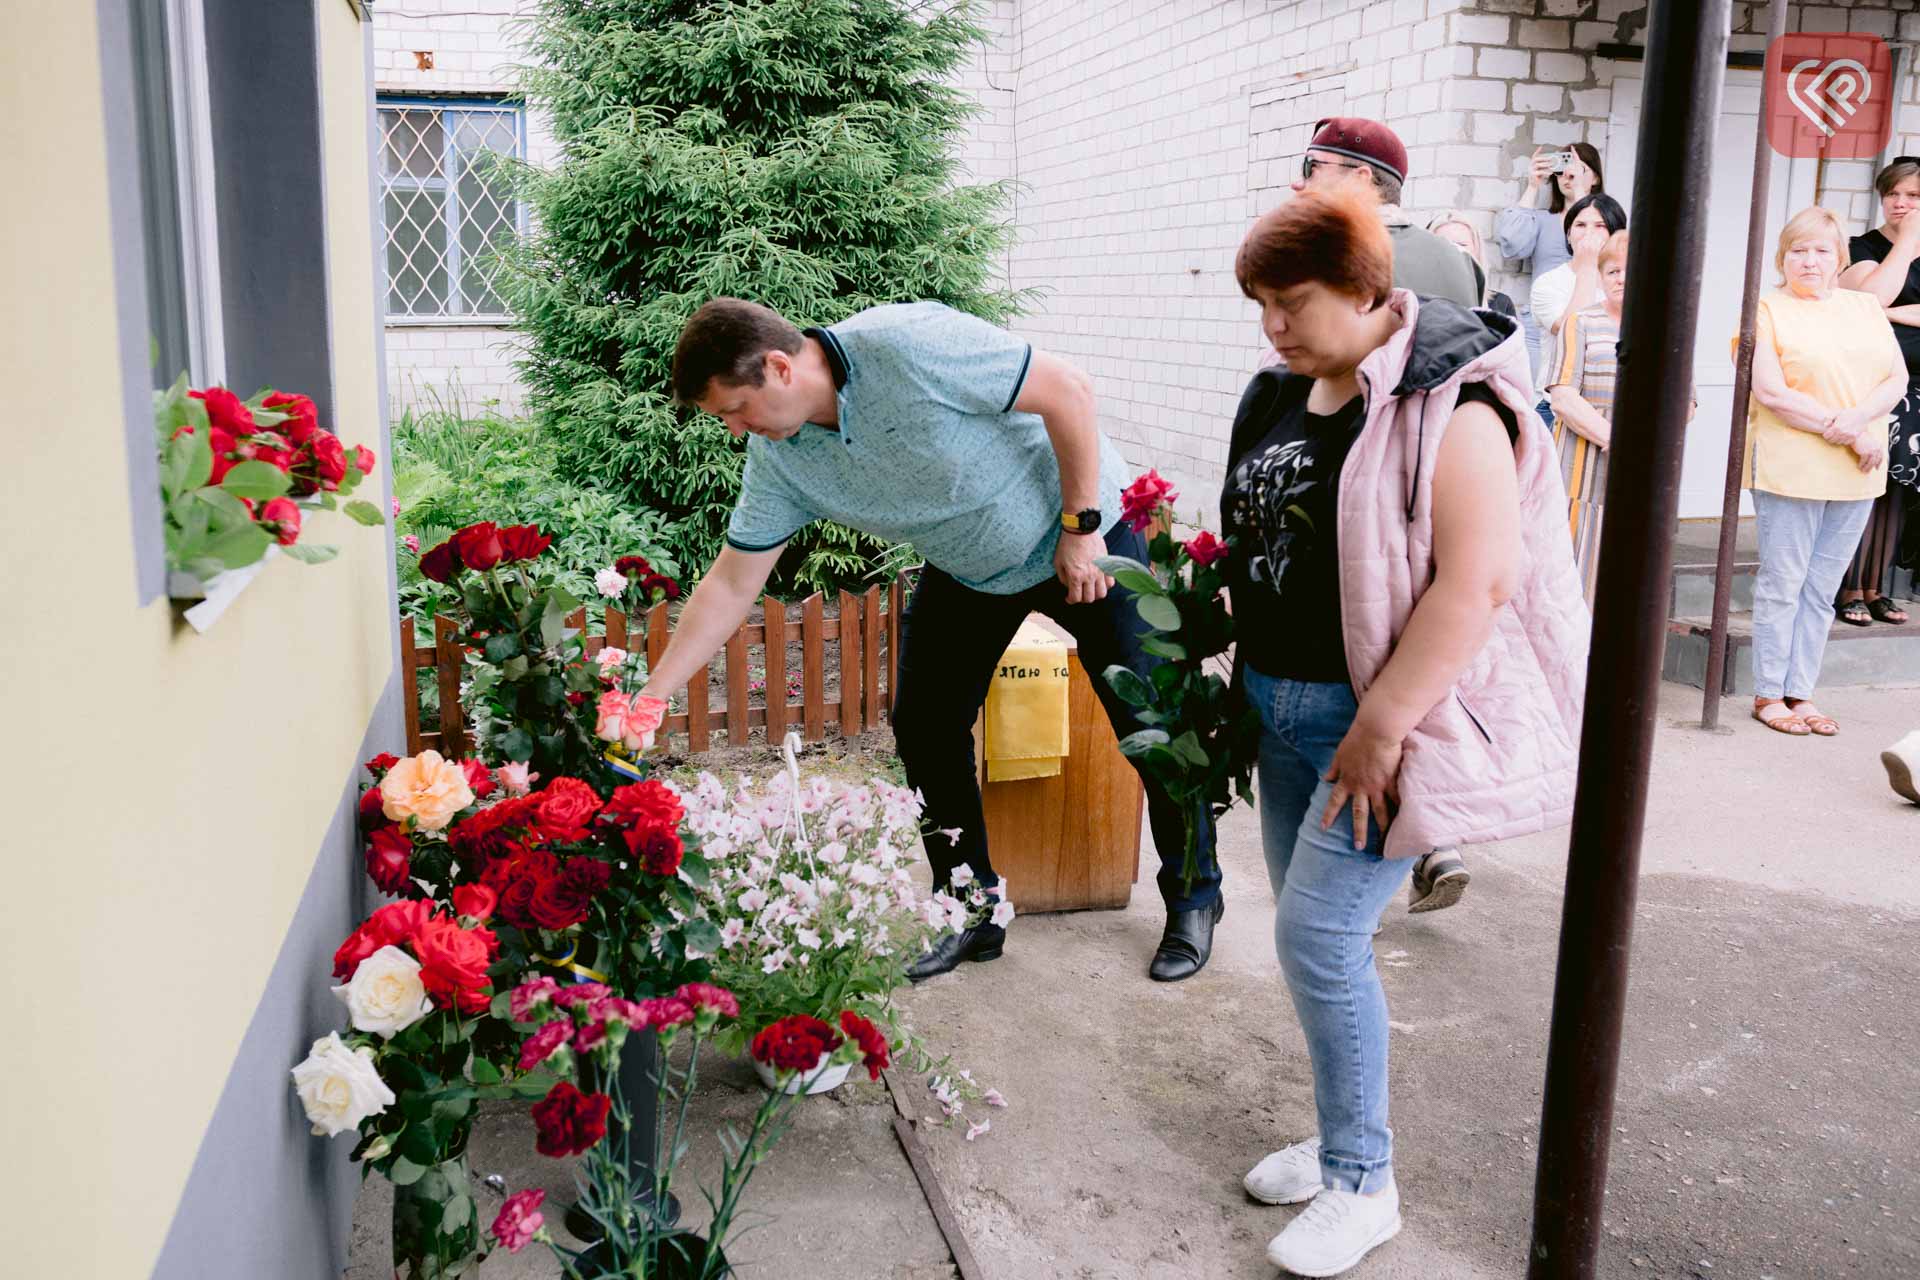 У Переяславі вшанували пам’ять воїна Володимира Кочина: меморіальну дошку встановили на фасаді ВУЖКГ, де він працював